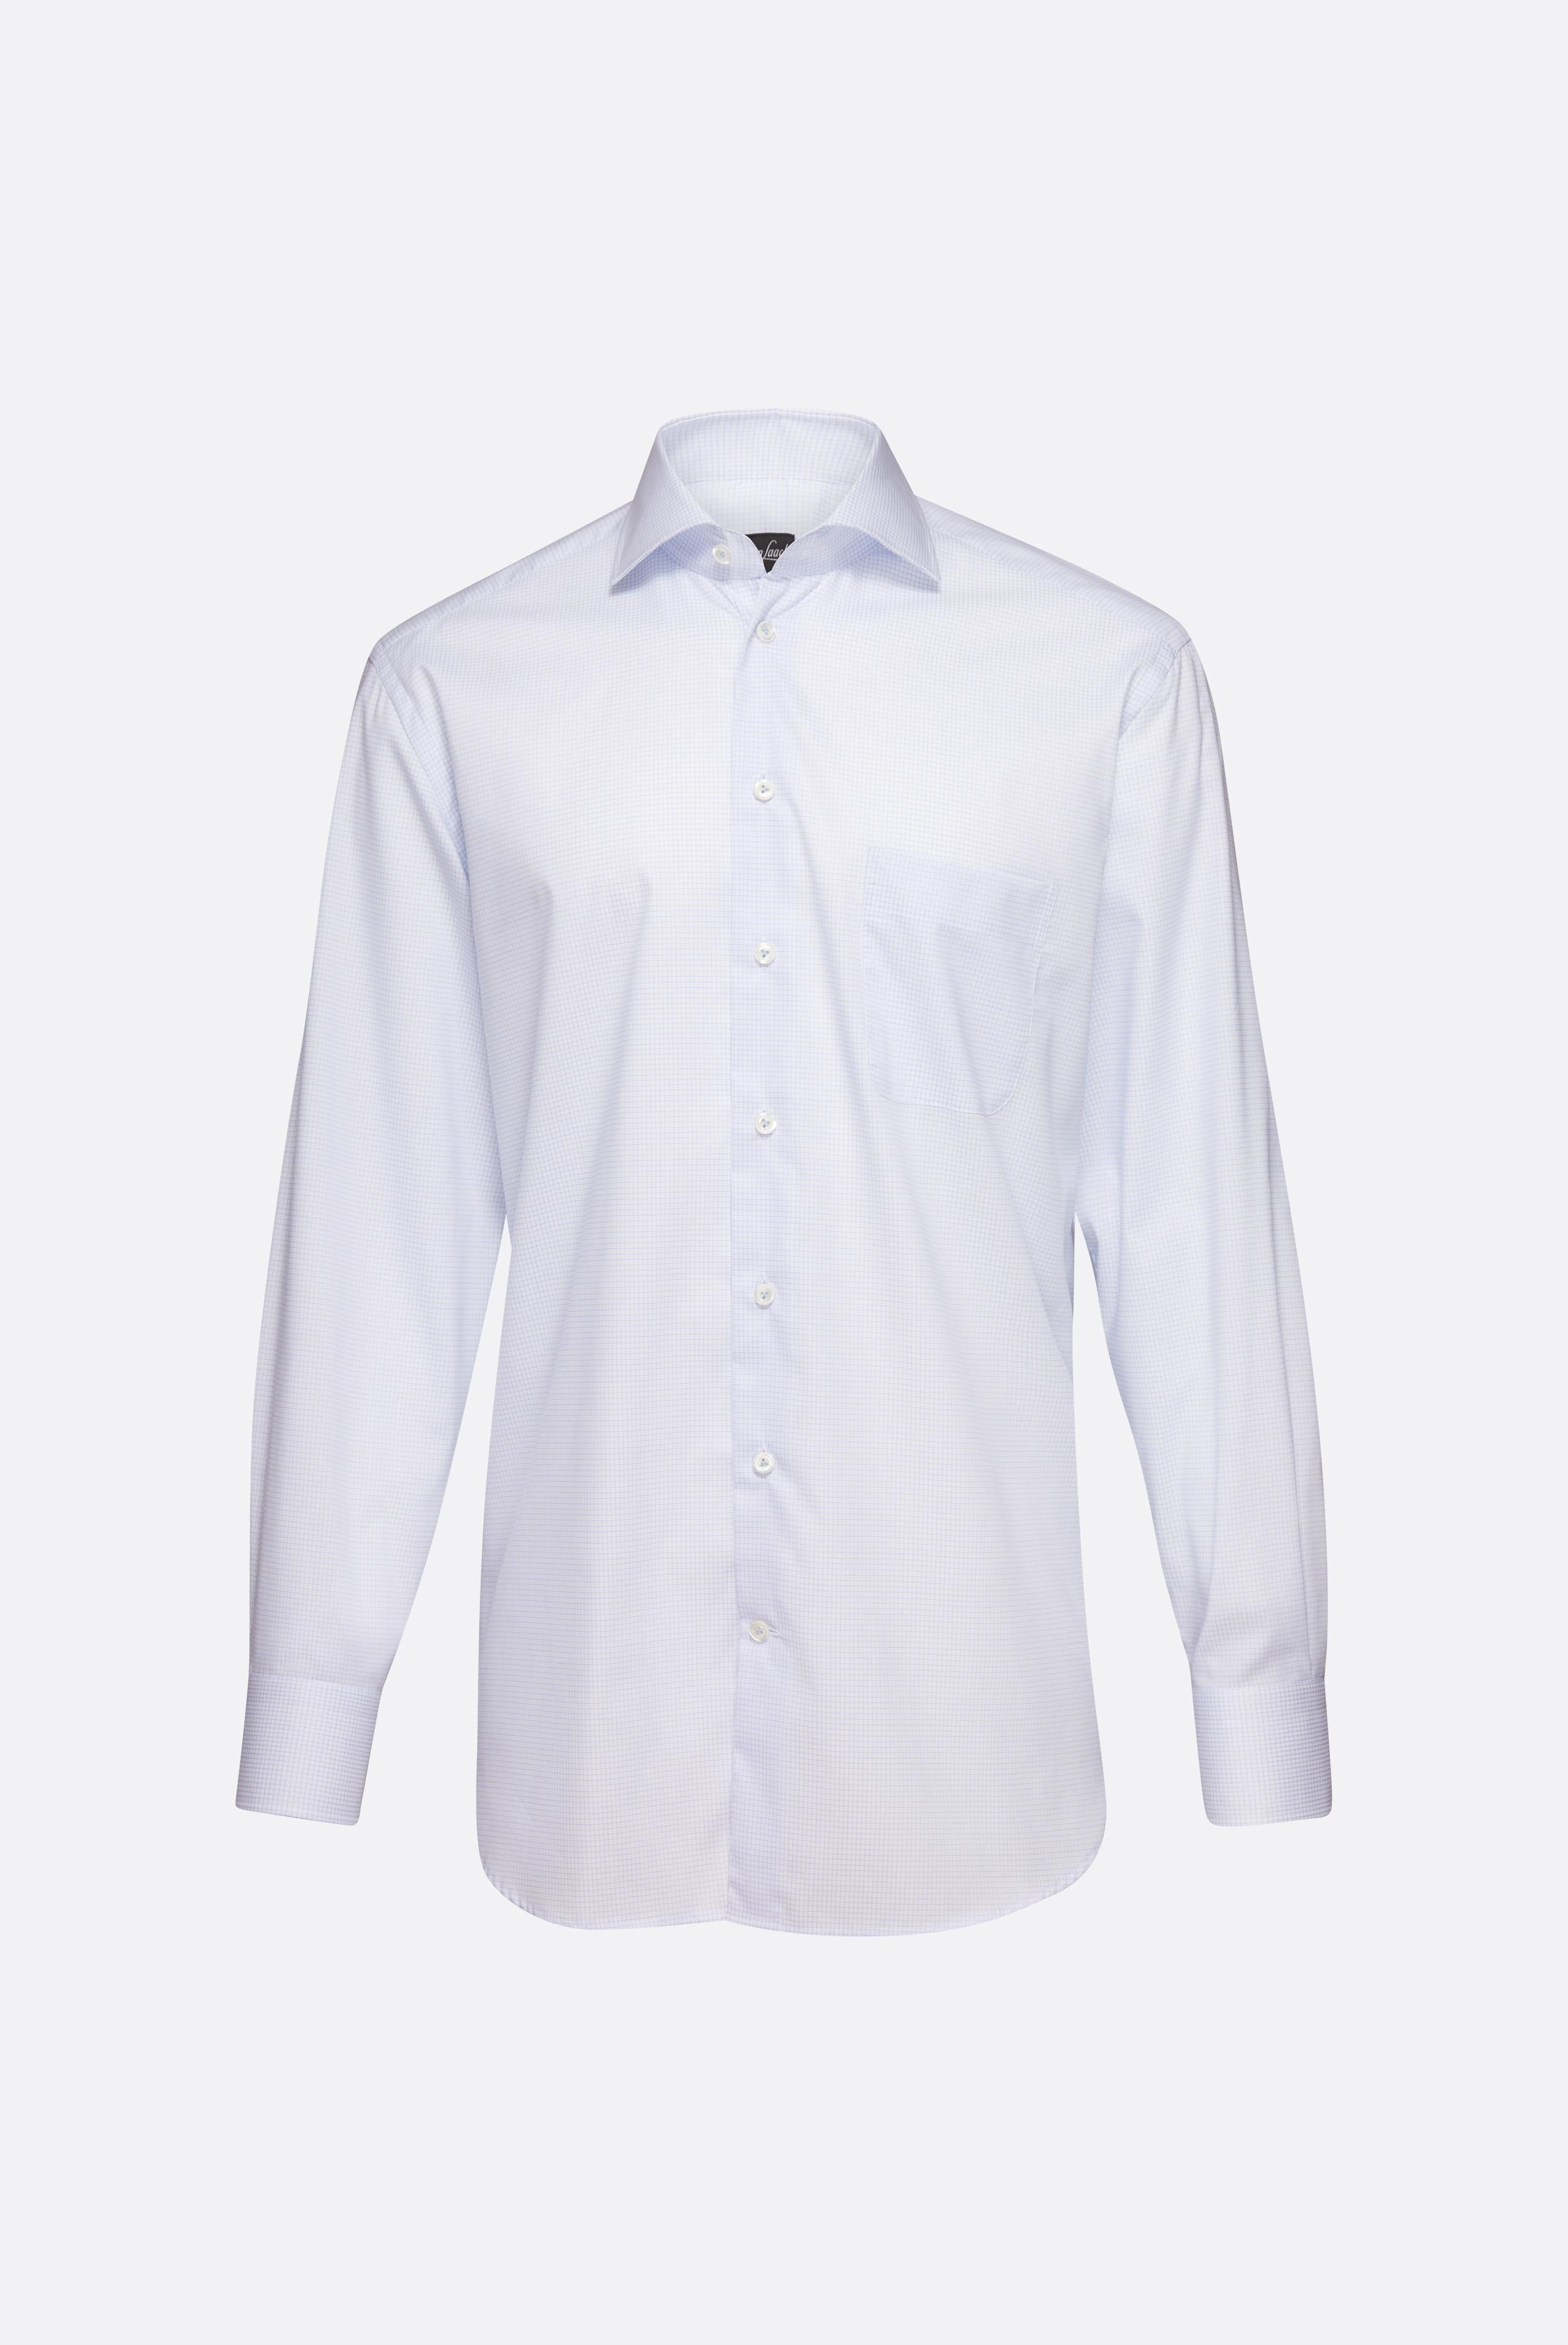 Bügelleichte Hemden+Kariertes Bügelfreies Hemd Comfort Fit+20.2021.BQ.151782.720.42